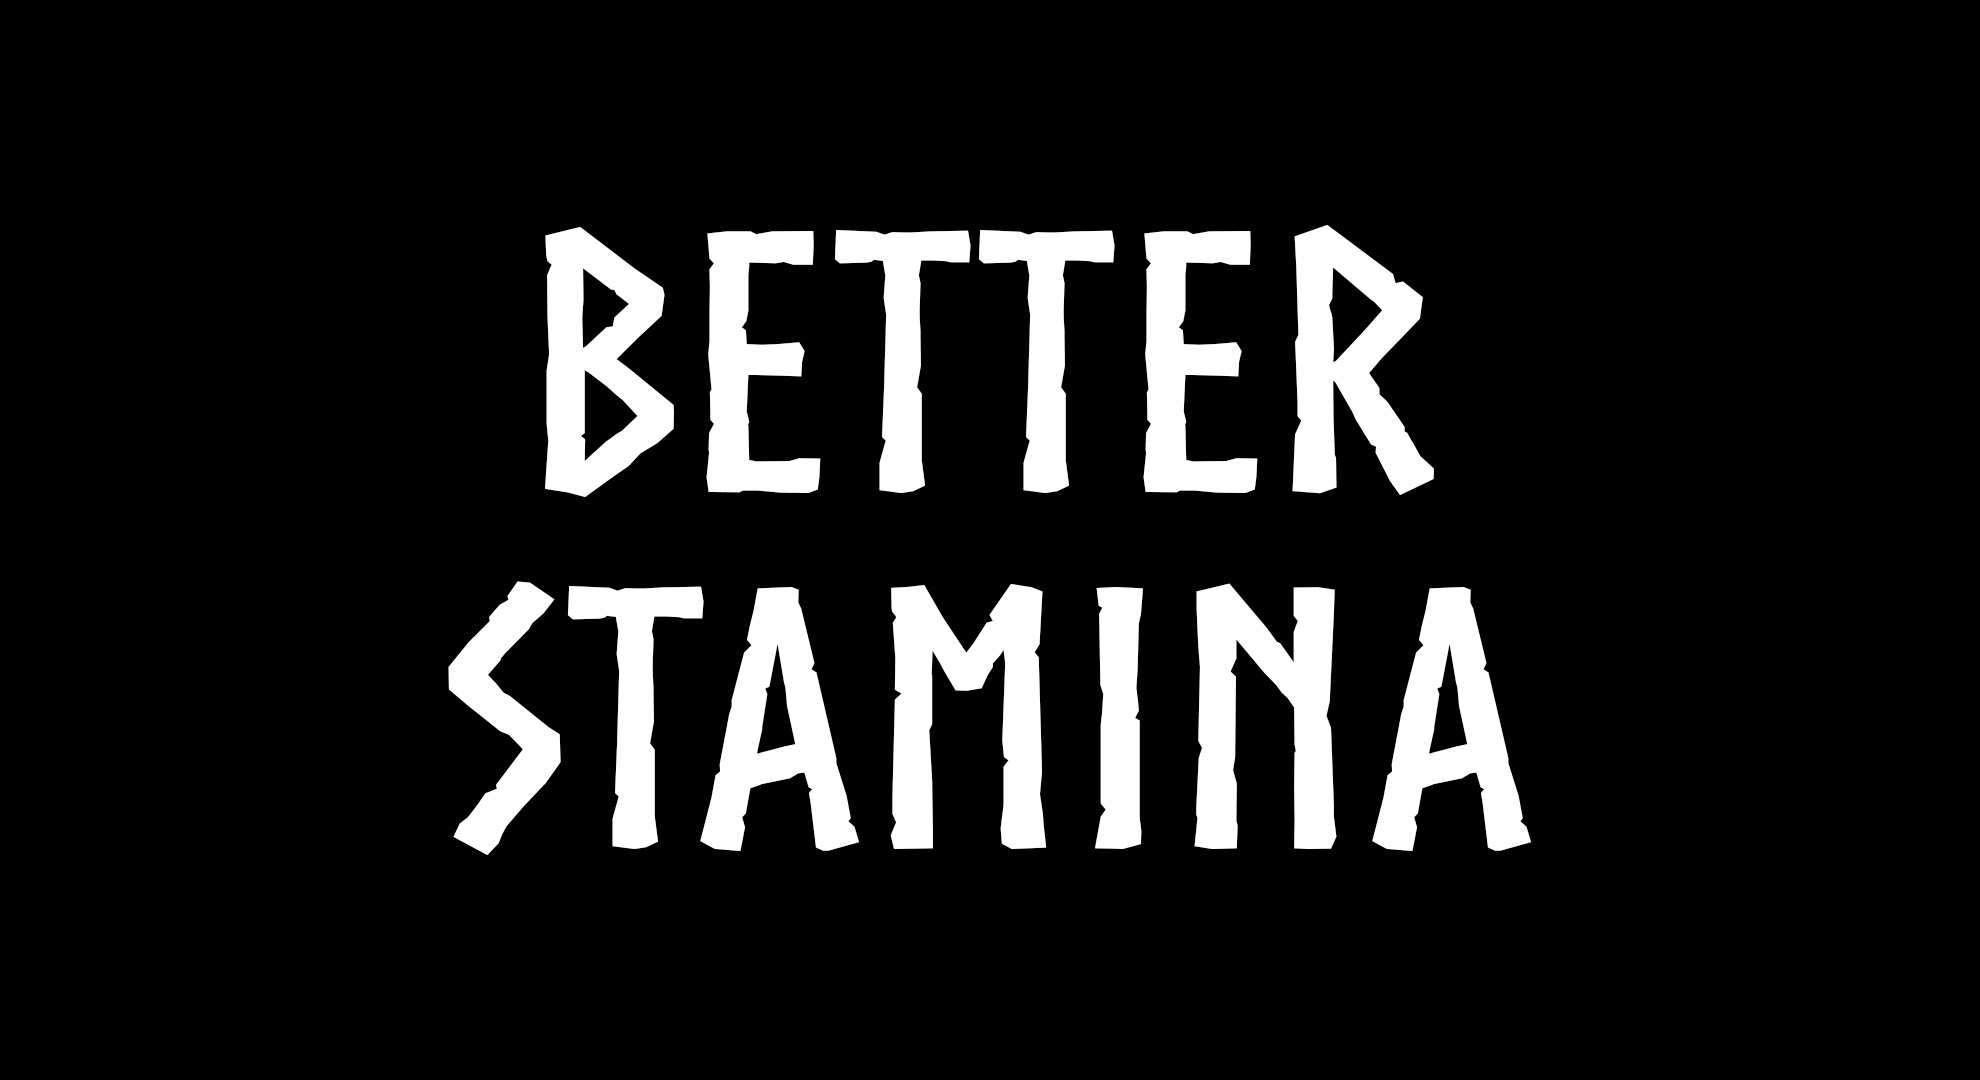 Better Stamina - мод для Valheim который изменяет баланс системы выносливости